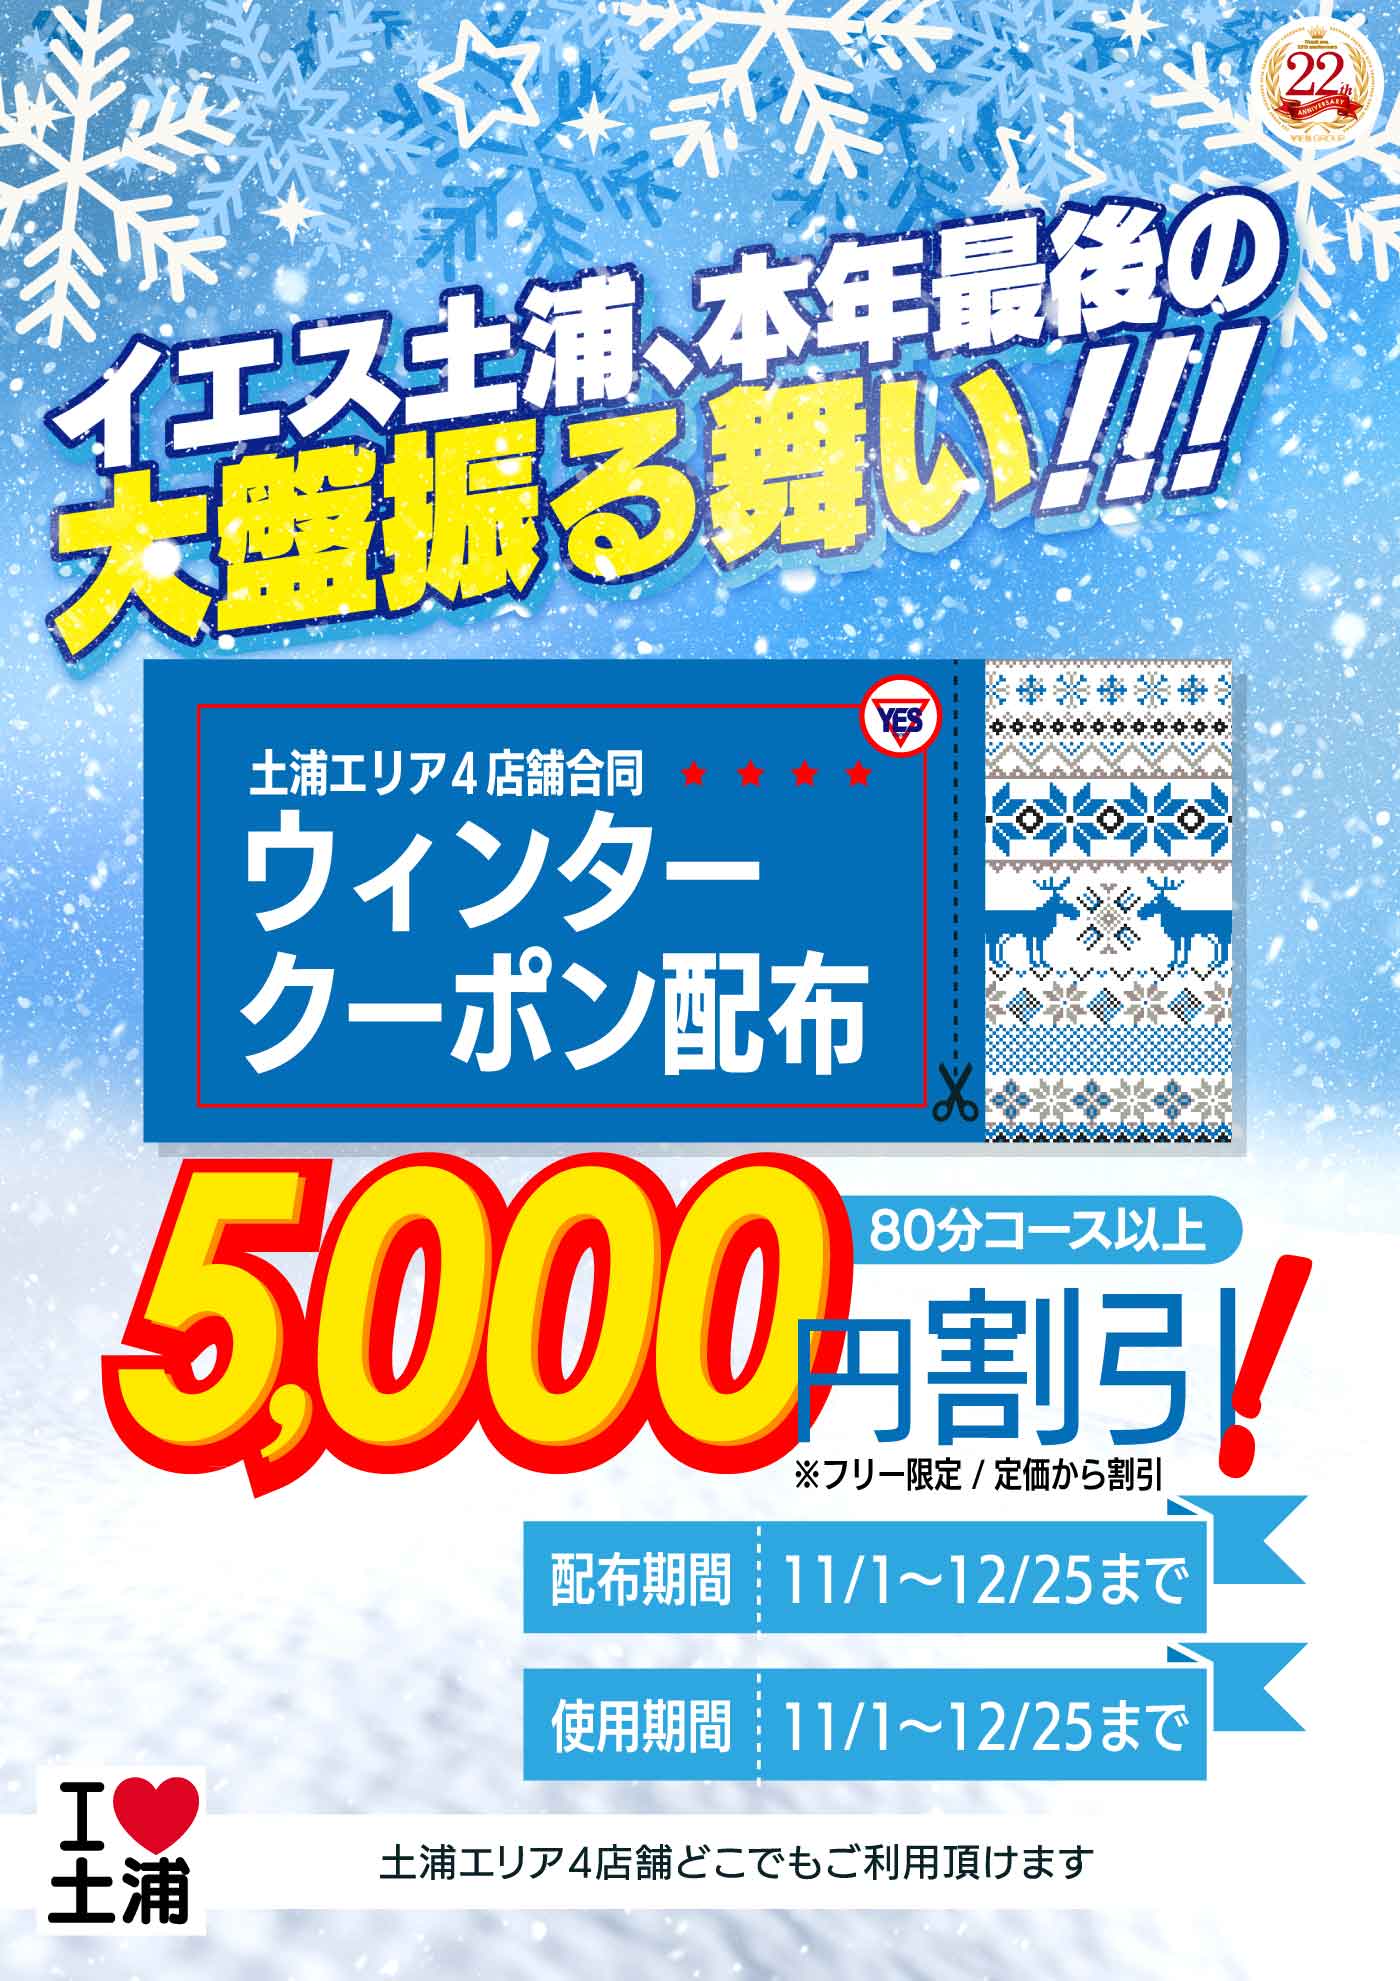 ☆超お得!!ウィンター祭り☆5,000円クーポン進呈